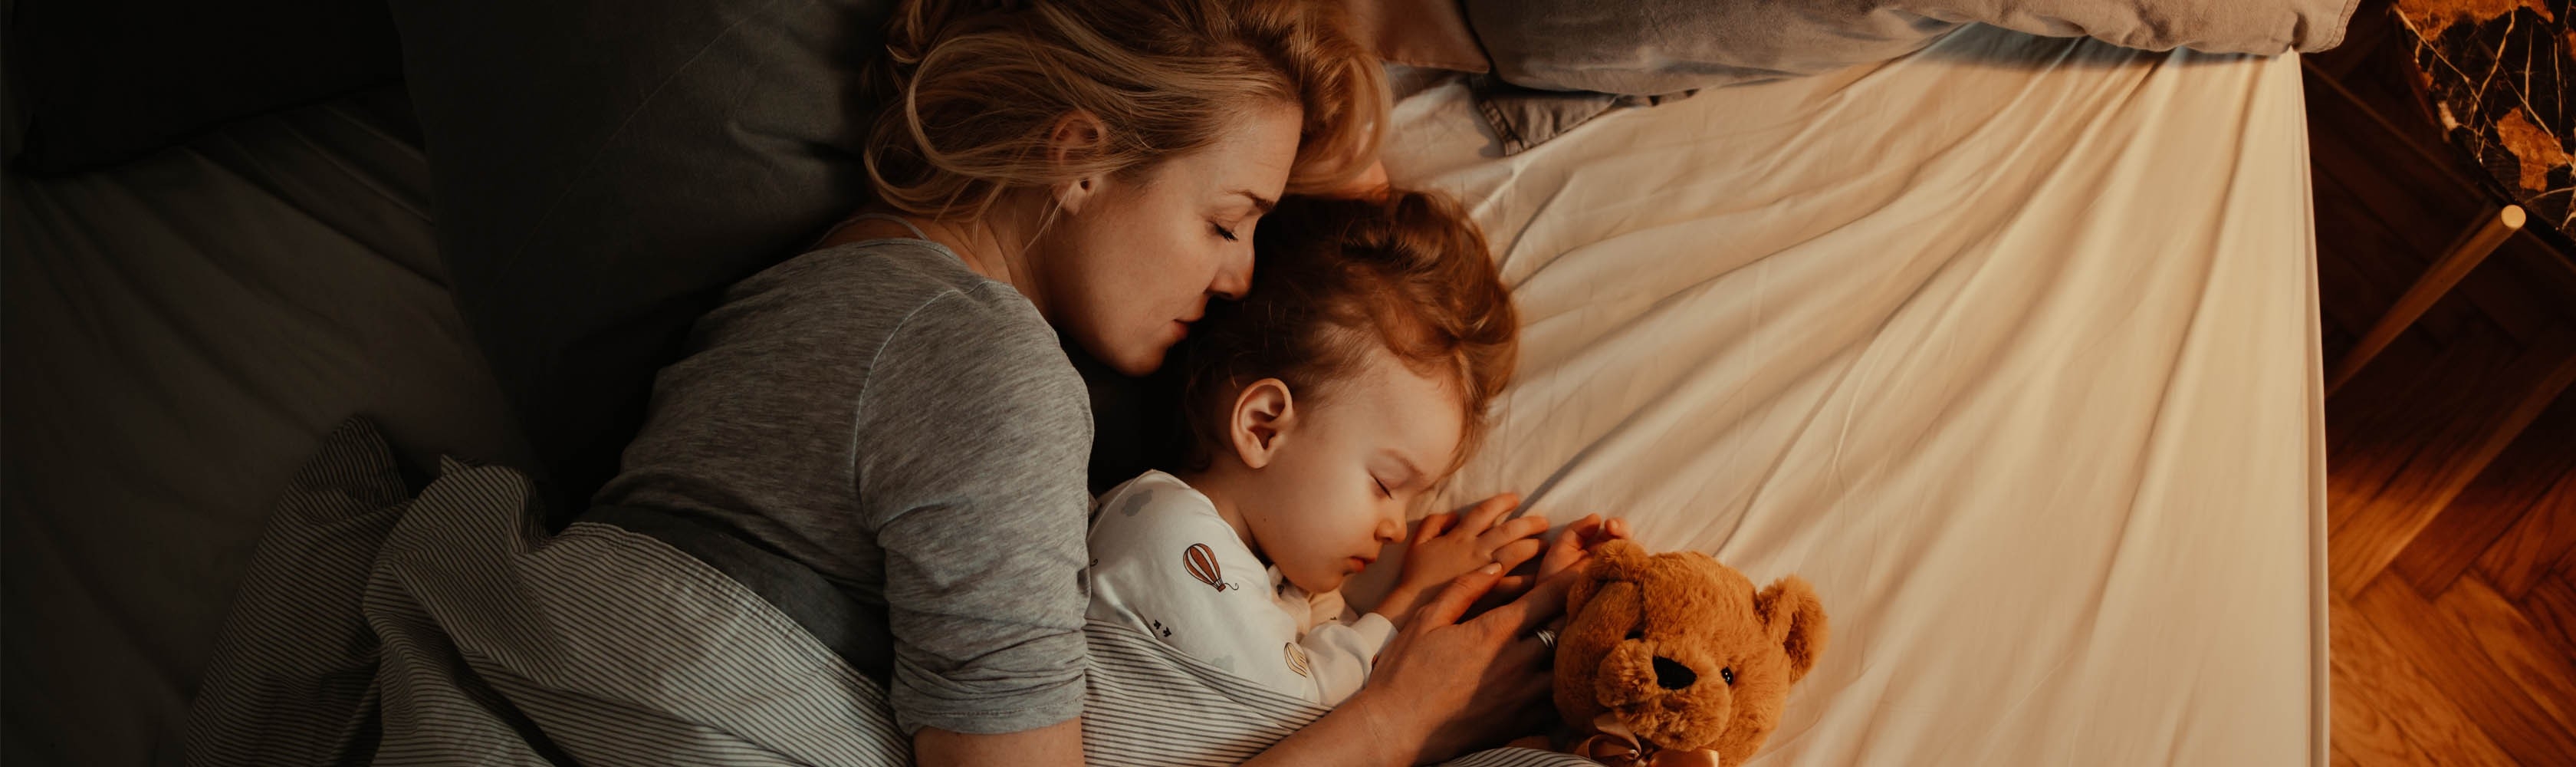 Mutter, Kind und Teddy liegen zusammen im Bett.